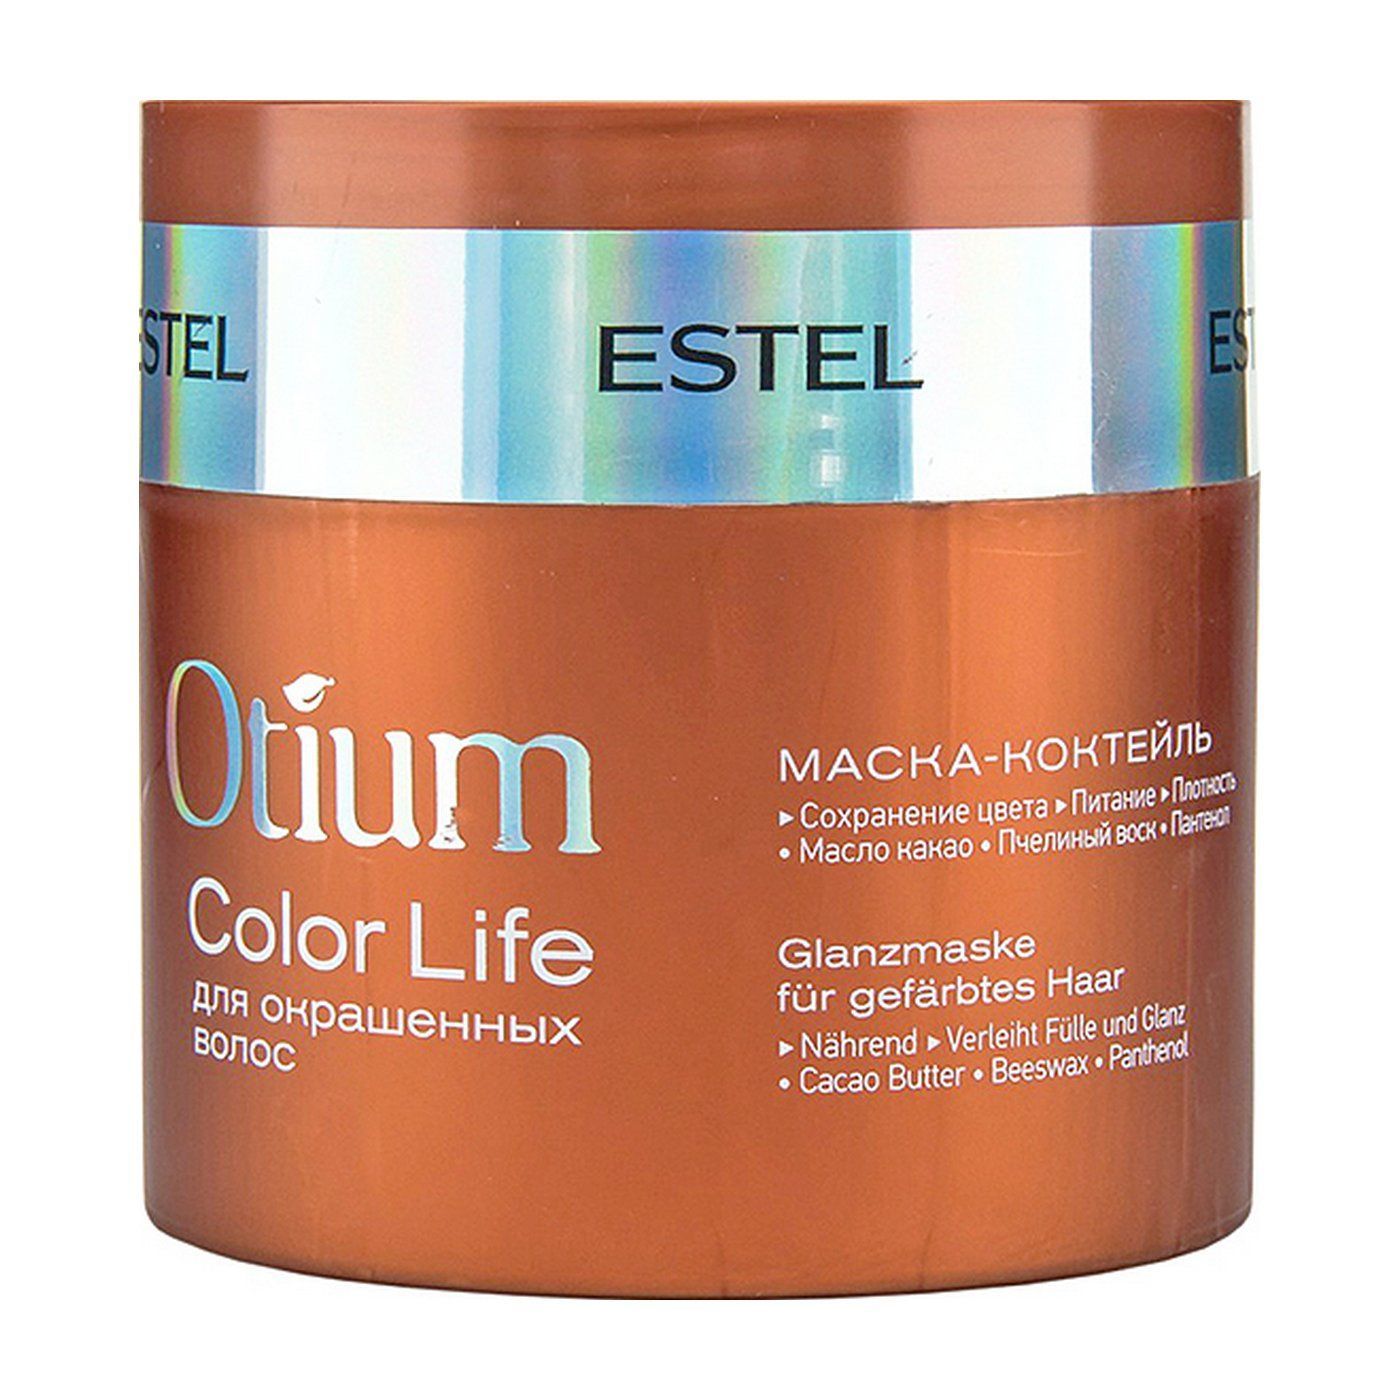 Маски эстель цена. Estel Otium Color Life маска. Маска-коктейль для окрашенных волос Otium Color Life, 300 мл. Estel/ маска-коктейль для окрашенных волос Otium Color Life (300 мл). Маска Эстель отиум для окрашенных волос.